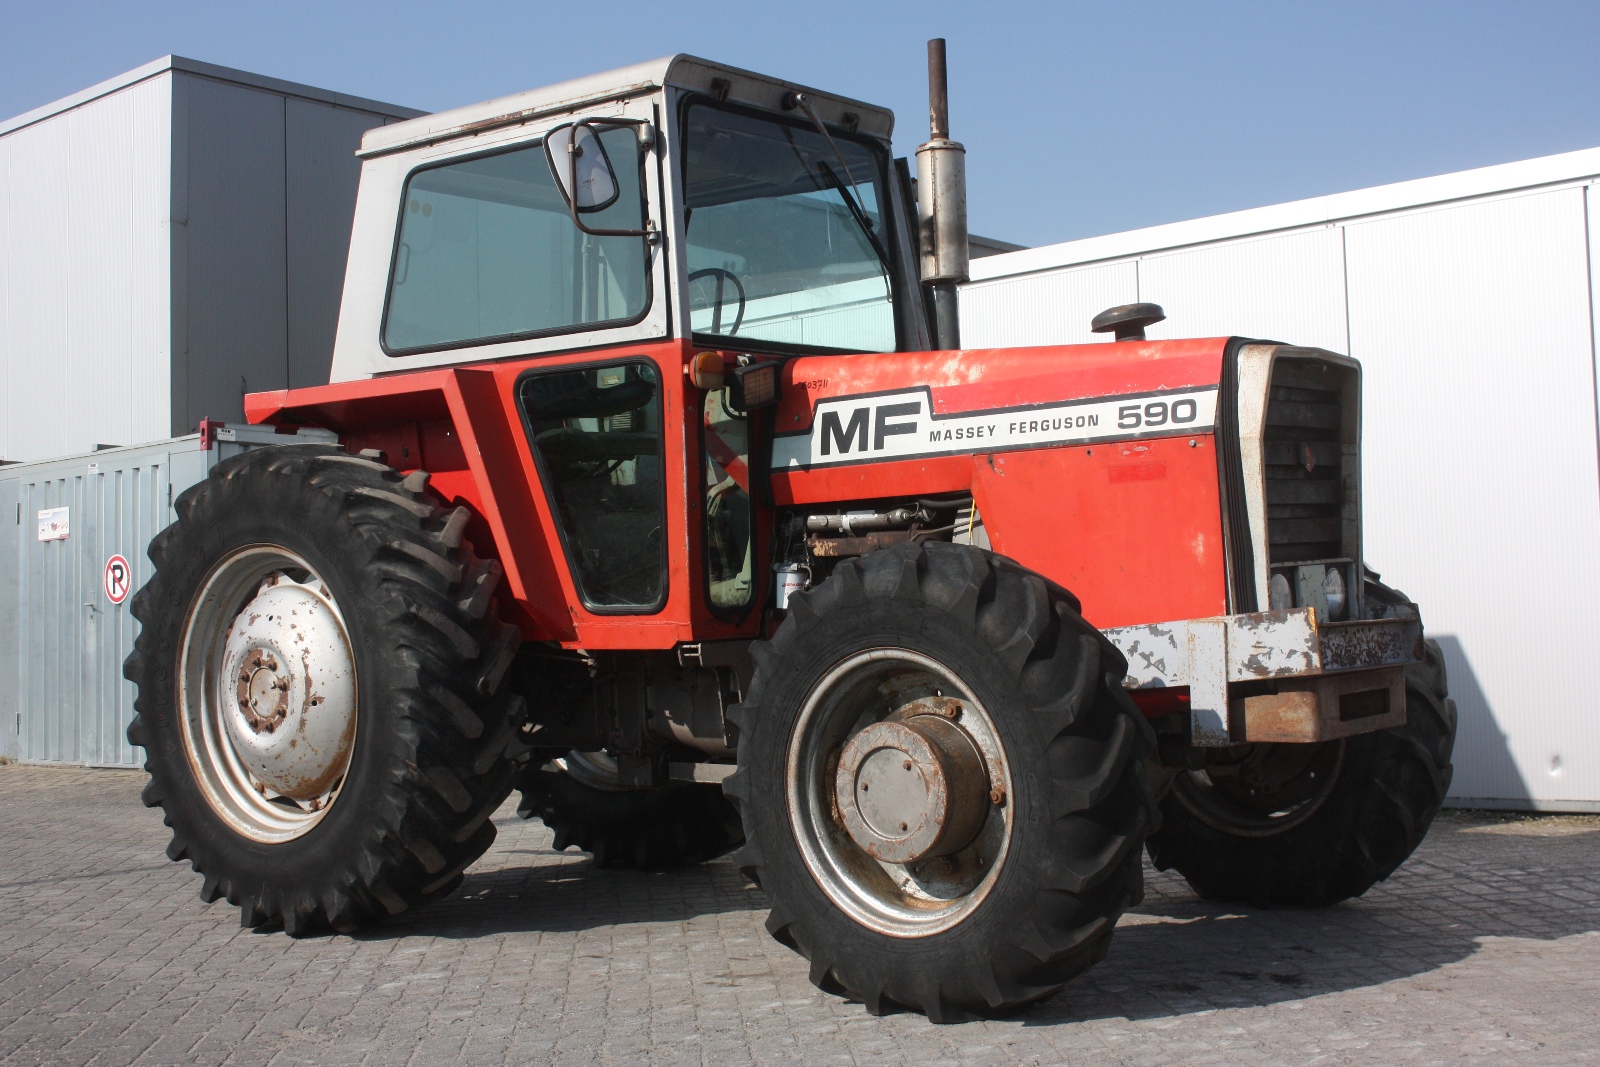 massey-ferguson-590-4wd-1977-agricultural-tractor-van-dijk-heavy